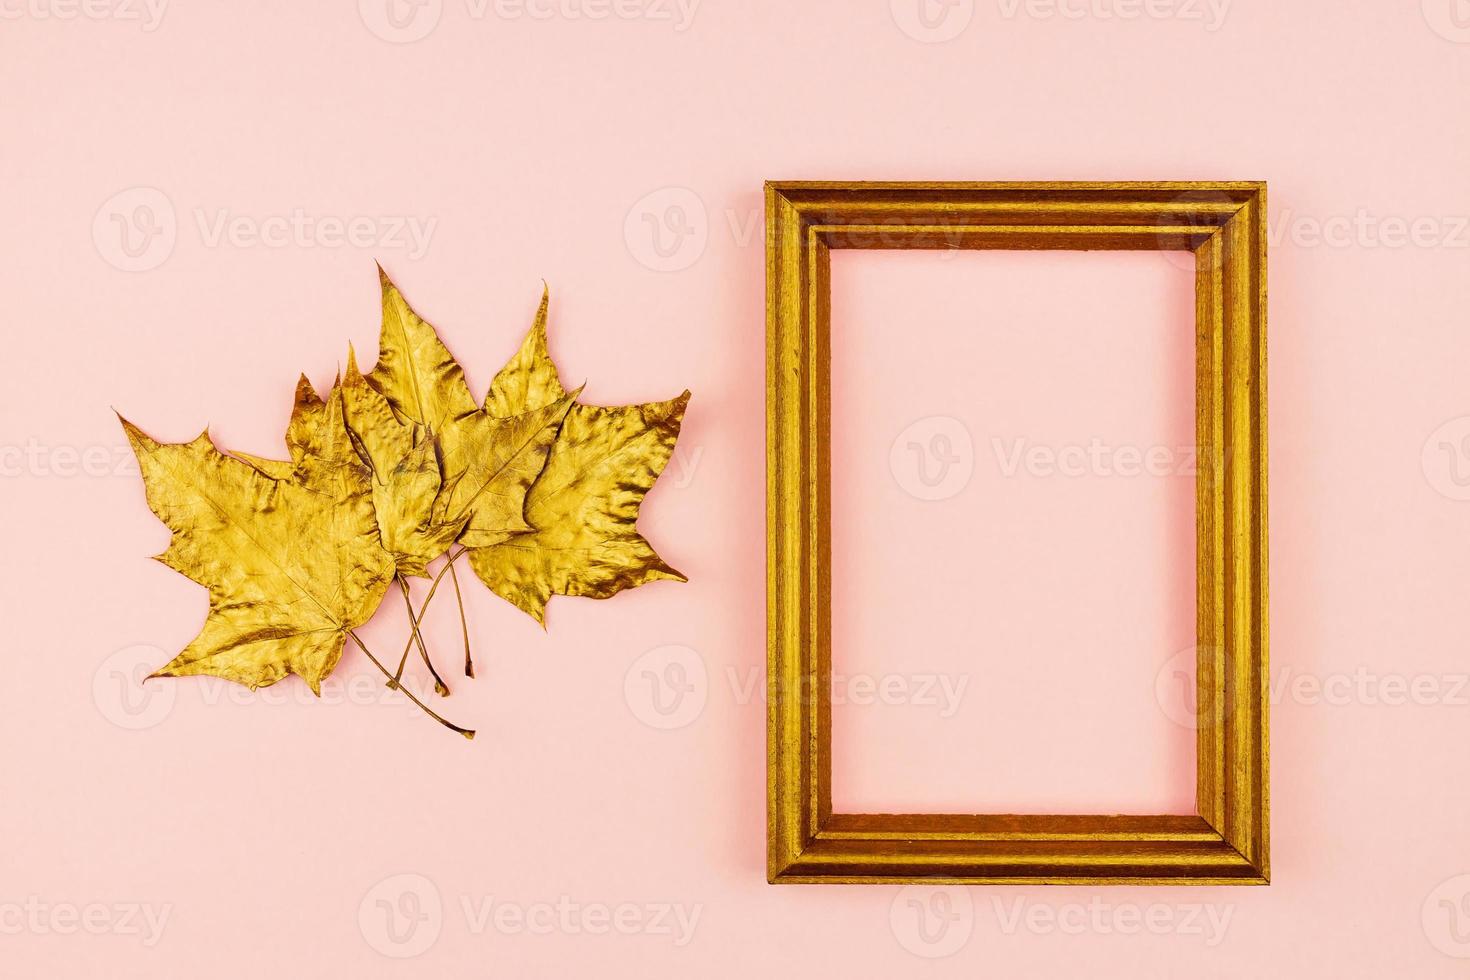 Herbststrauß aus golden bemalten Ahornblättern auf rosa Hintergrund. trendiges Konzept. Flay lag im Minimalismus-Stil. foto